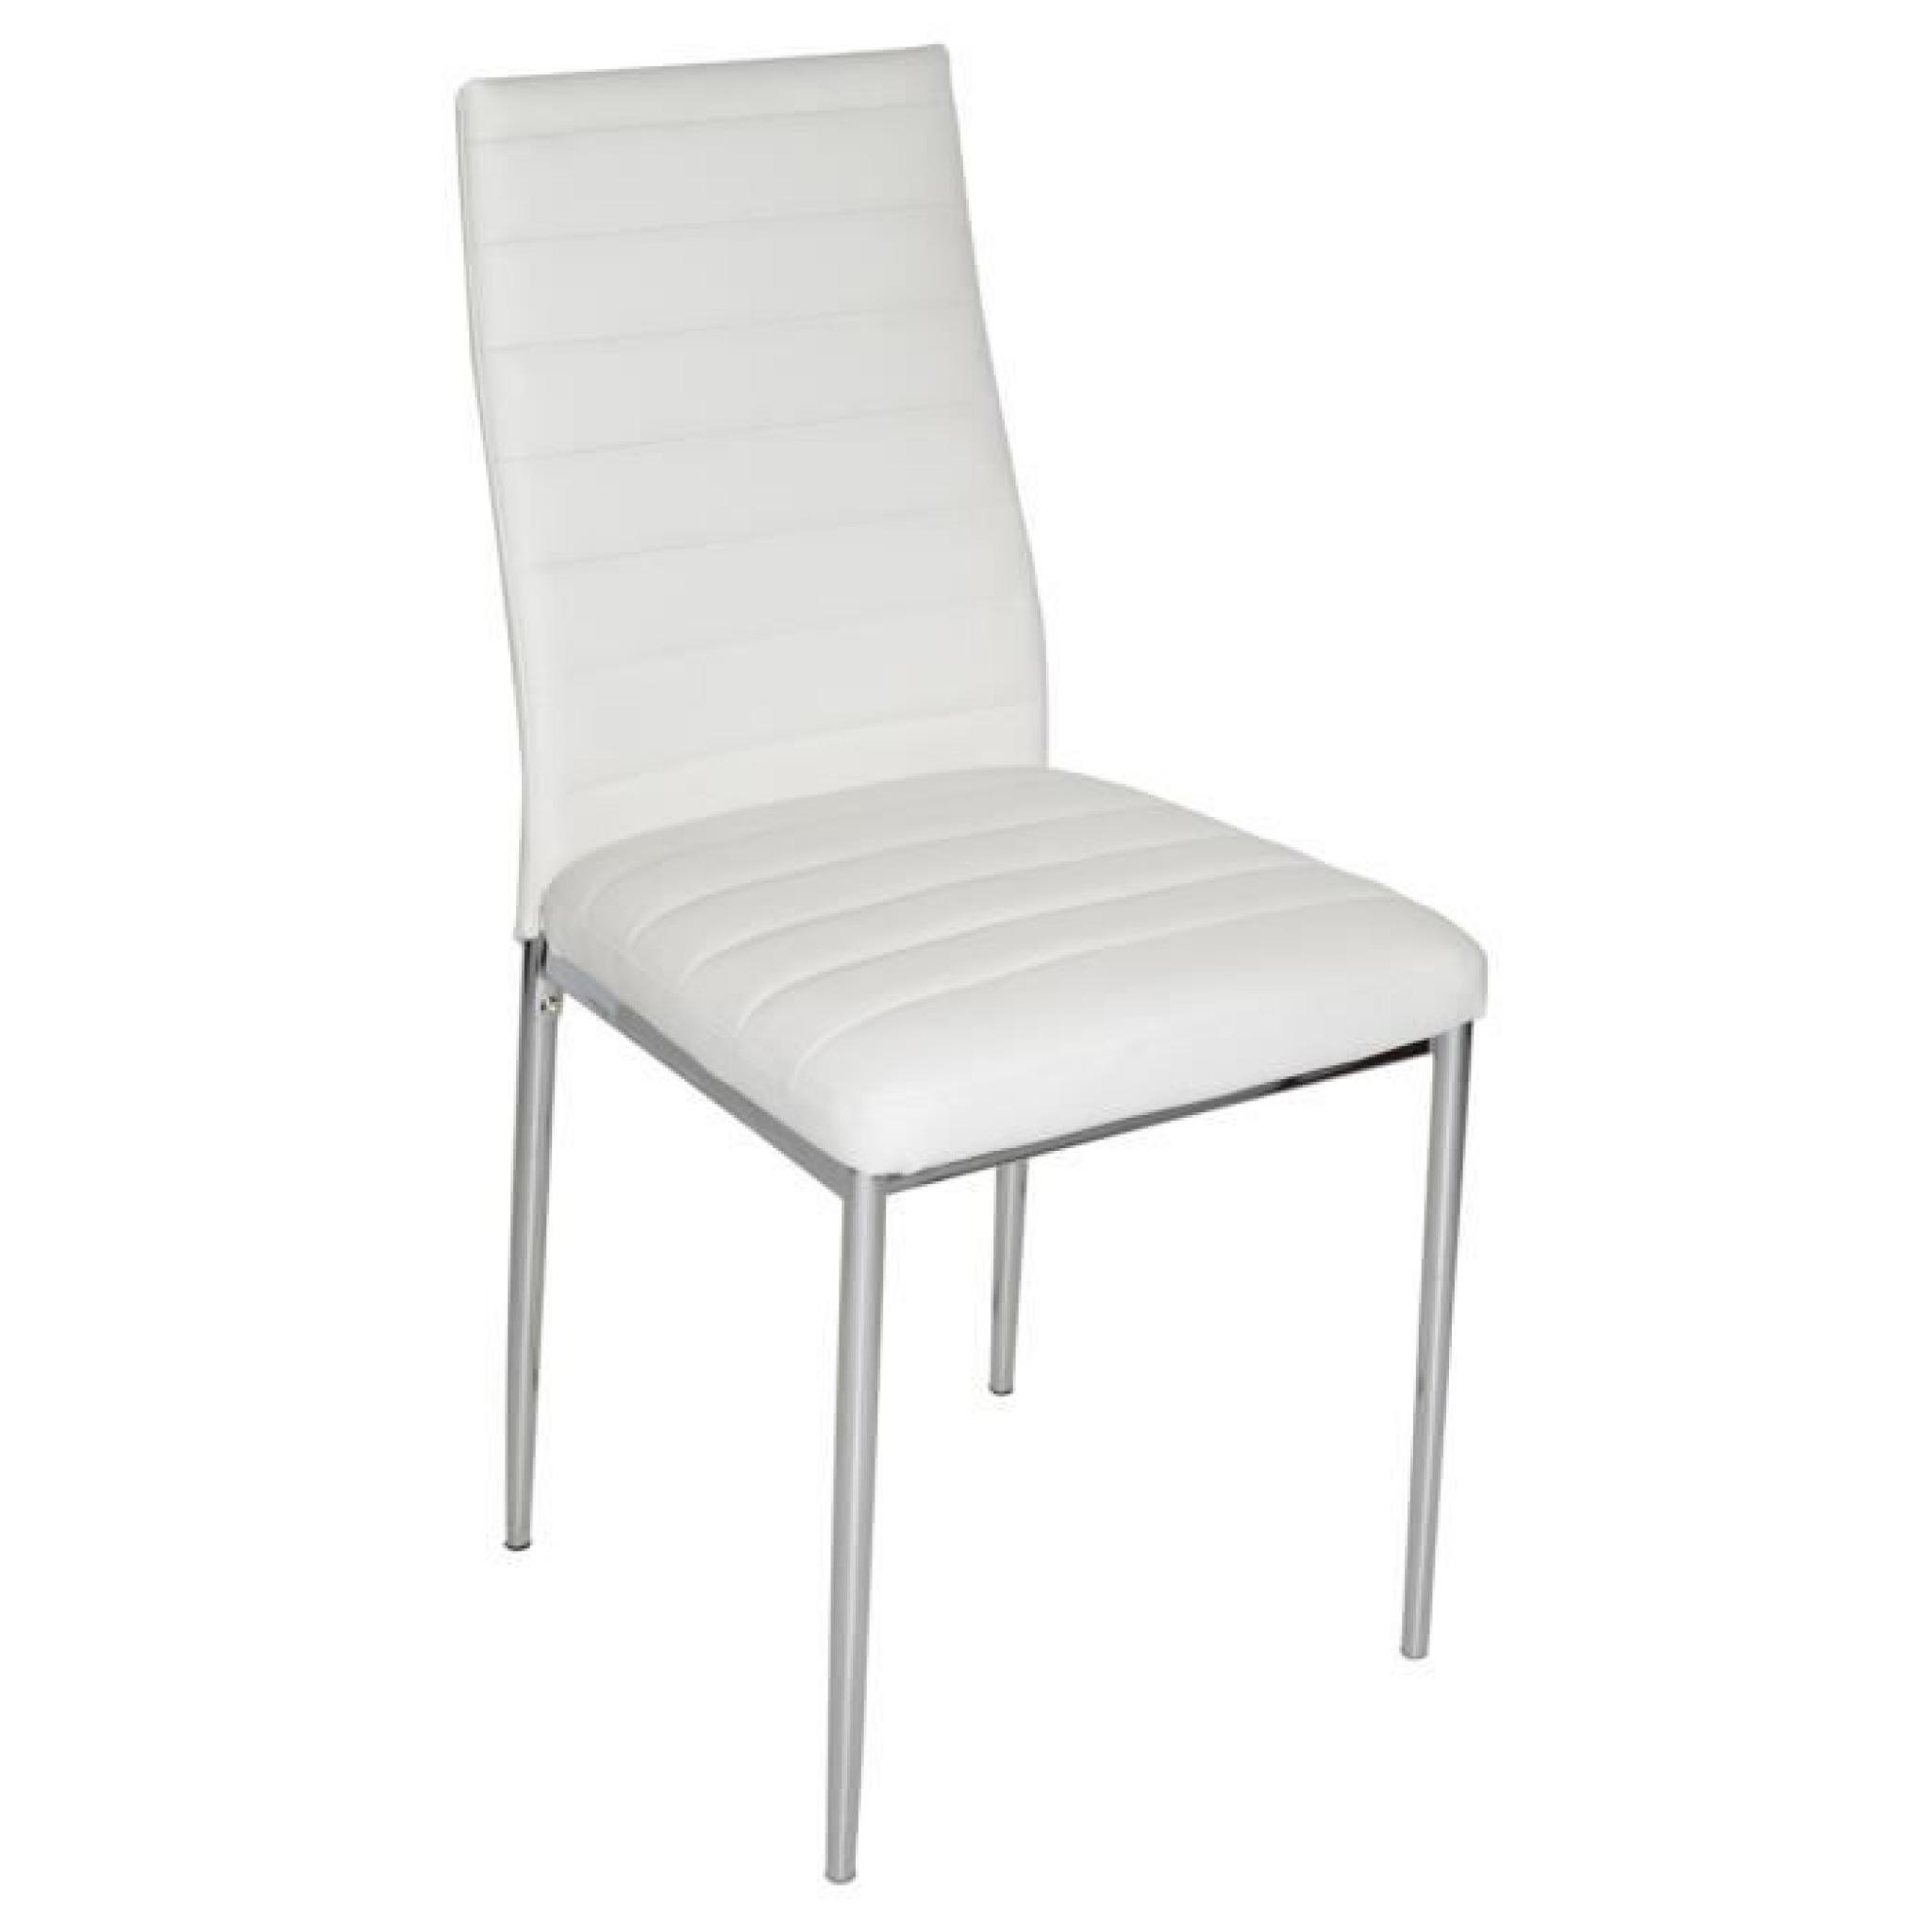 Chaise de salon blanche avec pieds garniture chromée, 430 x 425 x 930 mm